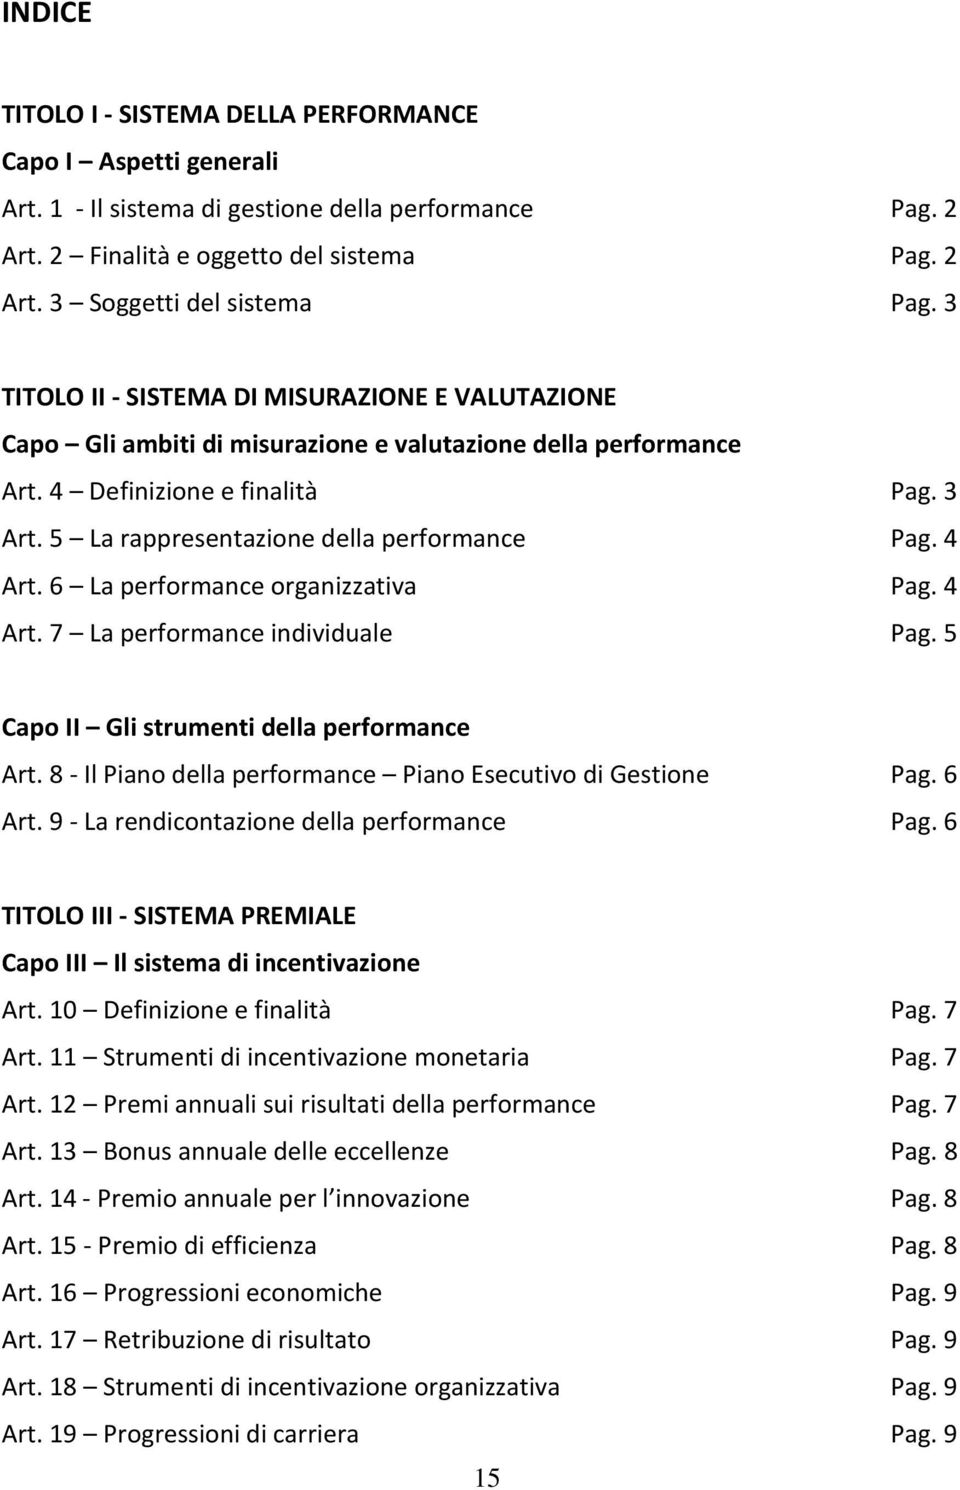 4 Art. 6 La performance organizzativa Pag. 4 Art. 7 La performance individuale Pag. 5 Capo II Gli strumenti della performance Art. 8 - Il Piano della performance Piano Esecutivo di Gestione Pag.